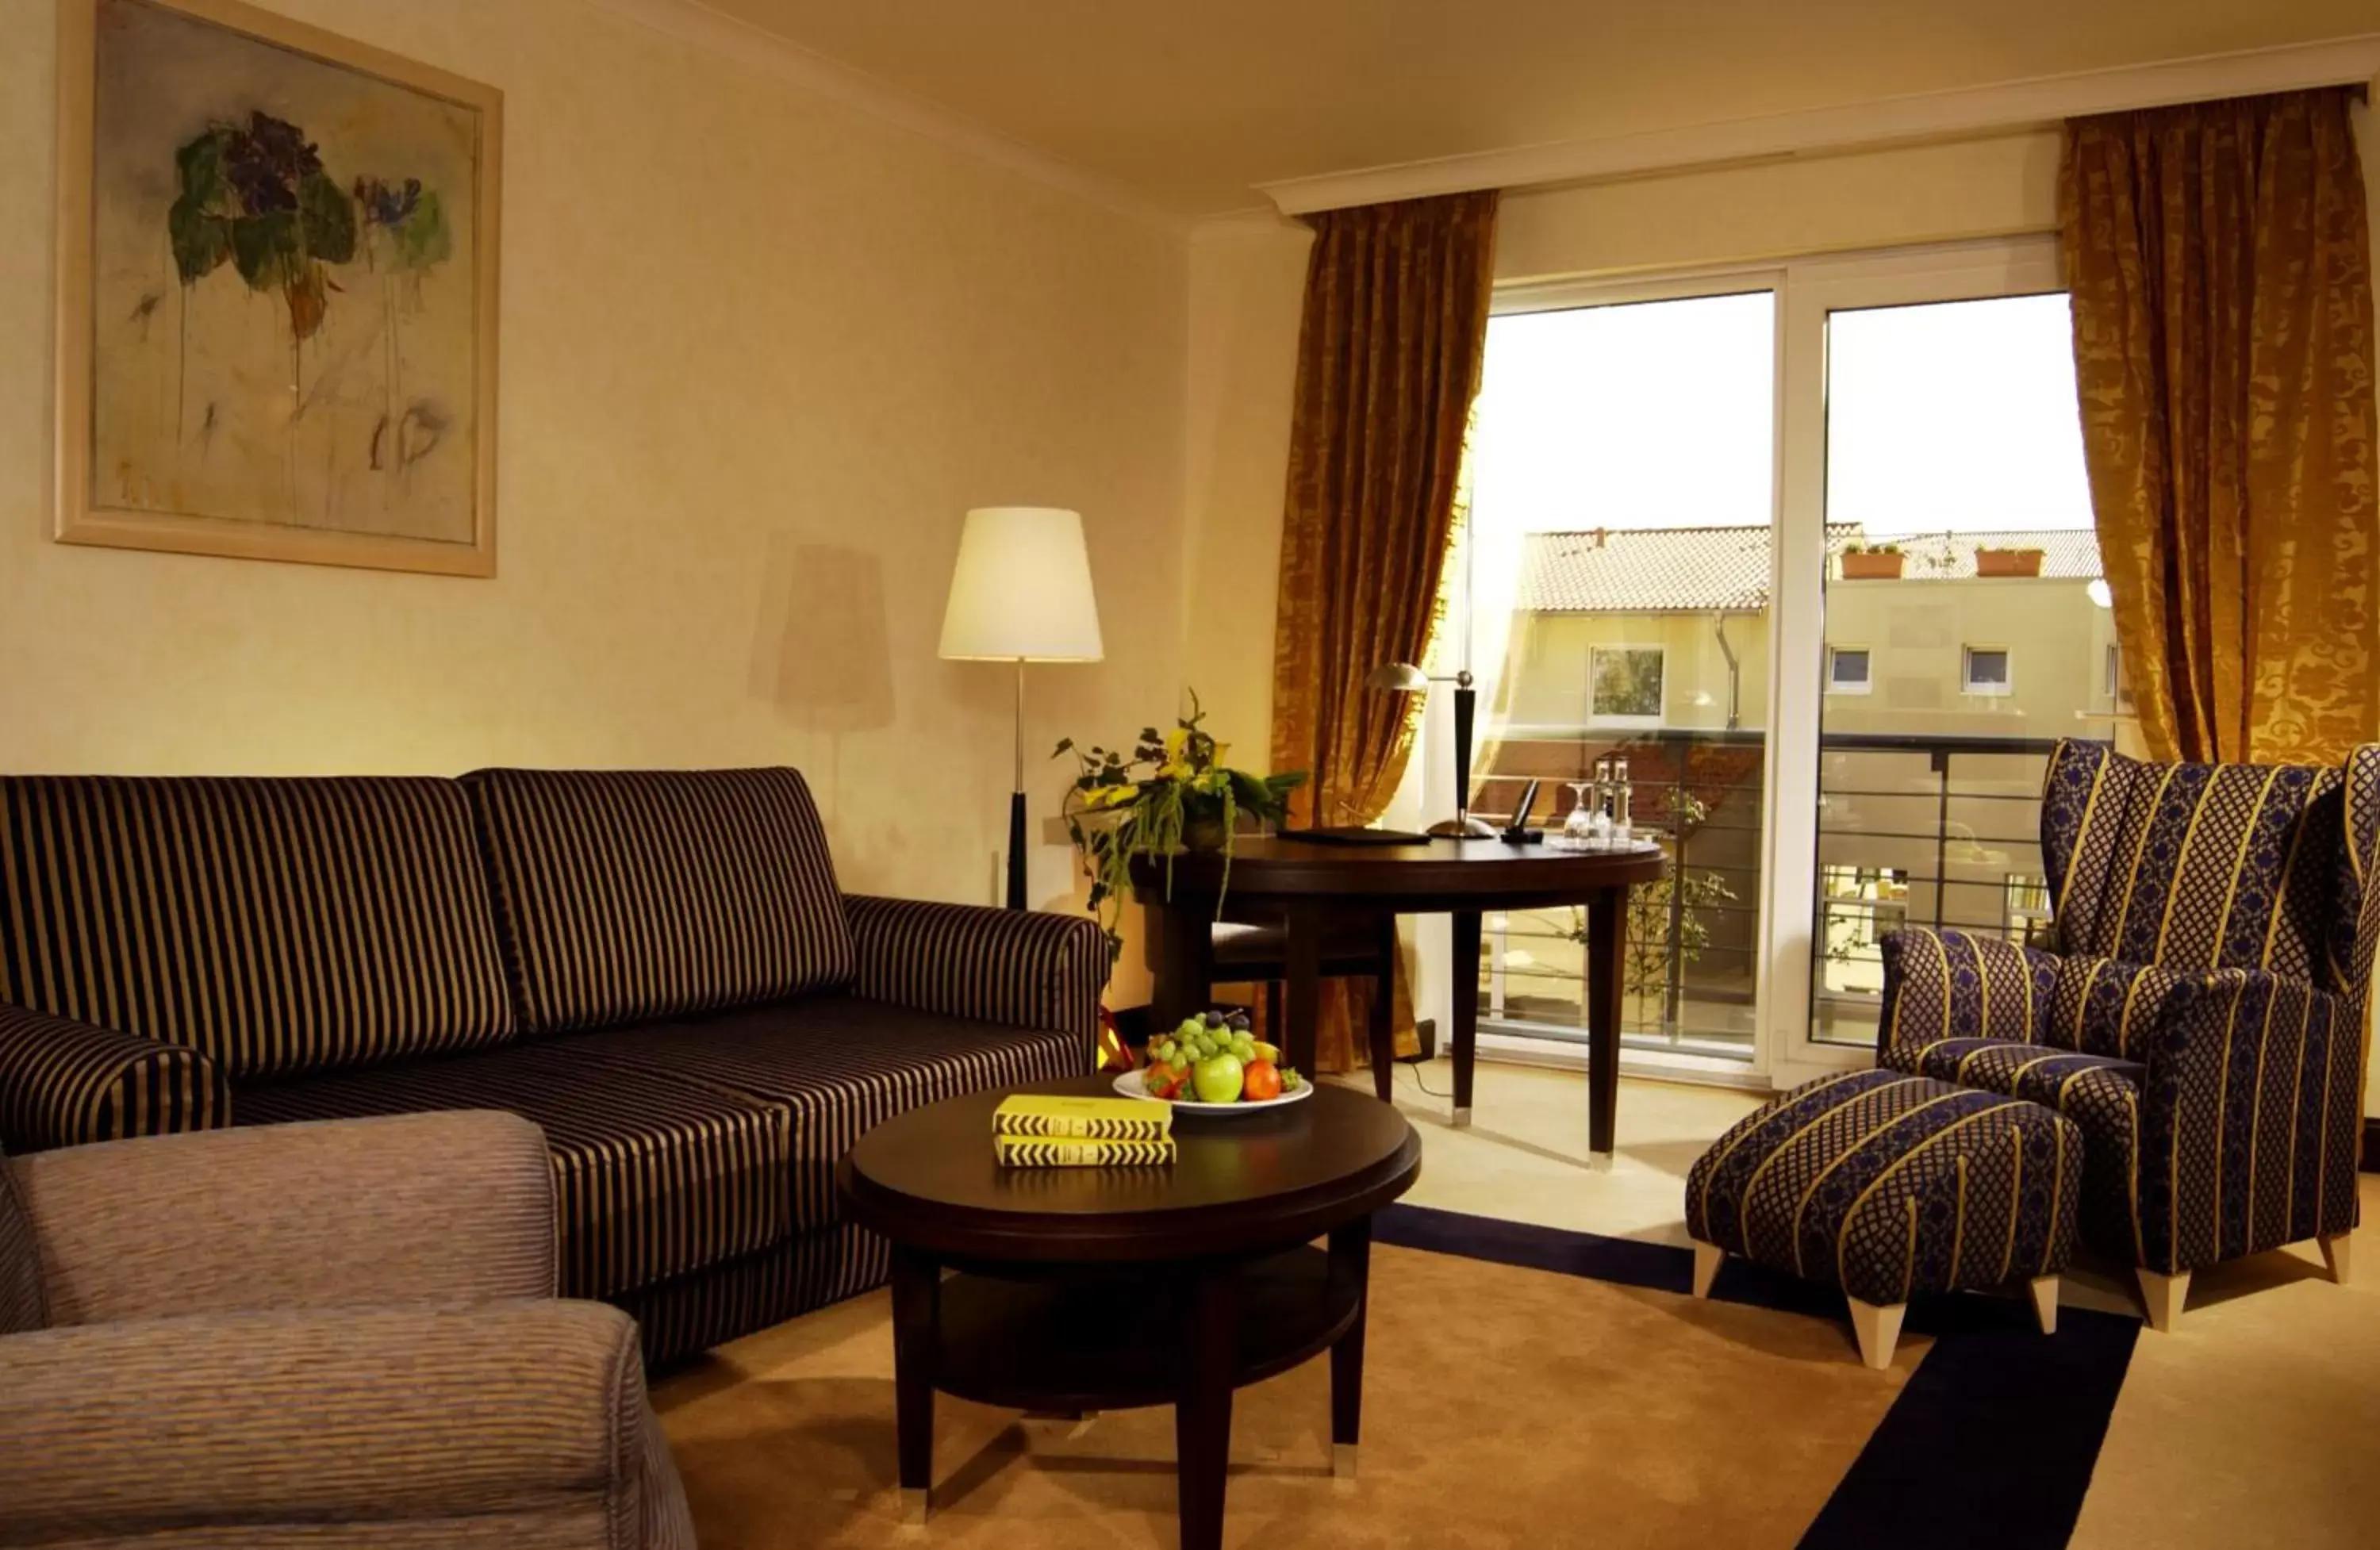 Balcony/Terrace, Seating Area in Best Western Premier Castanea Resort Hotel